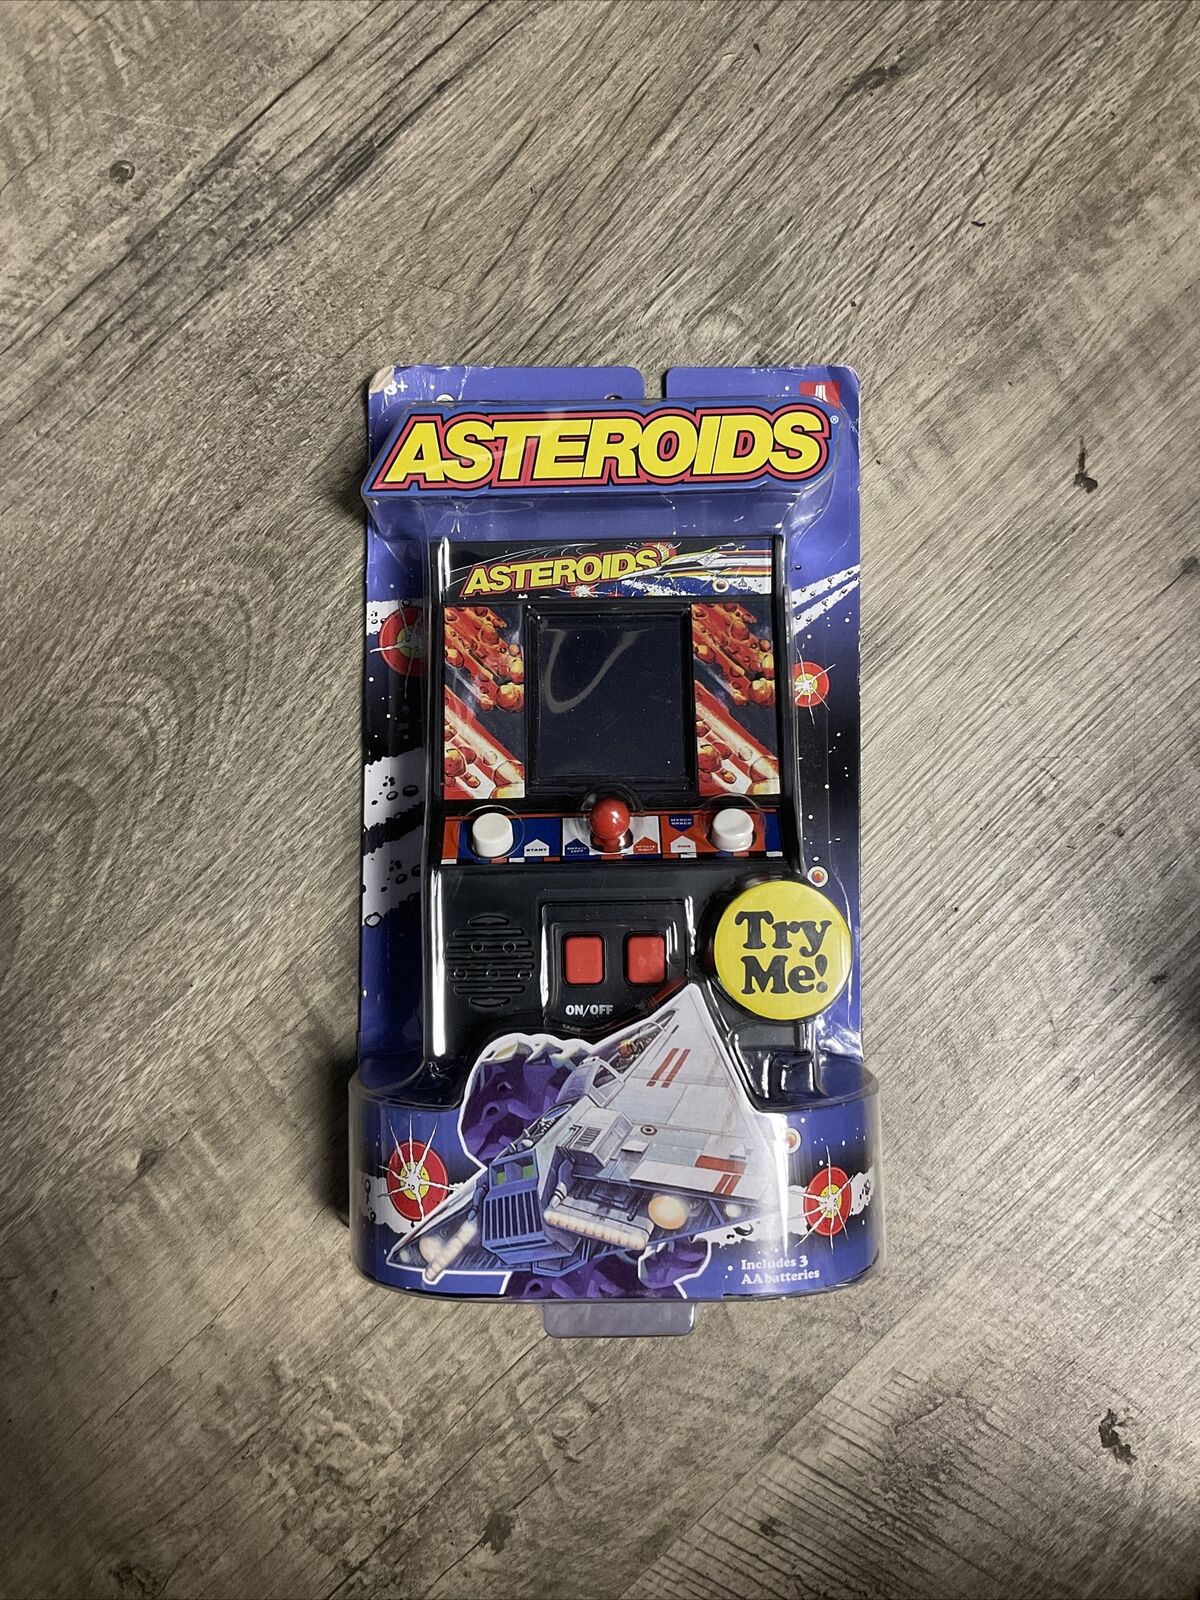 Atari Asteroids Handheld Electronic Mini Arcade Video Game Sealed 1979